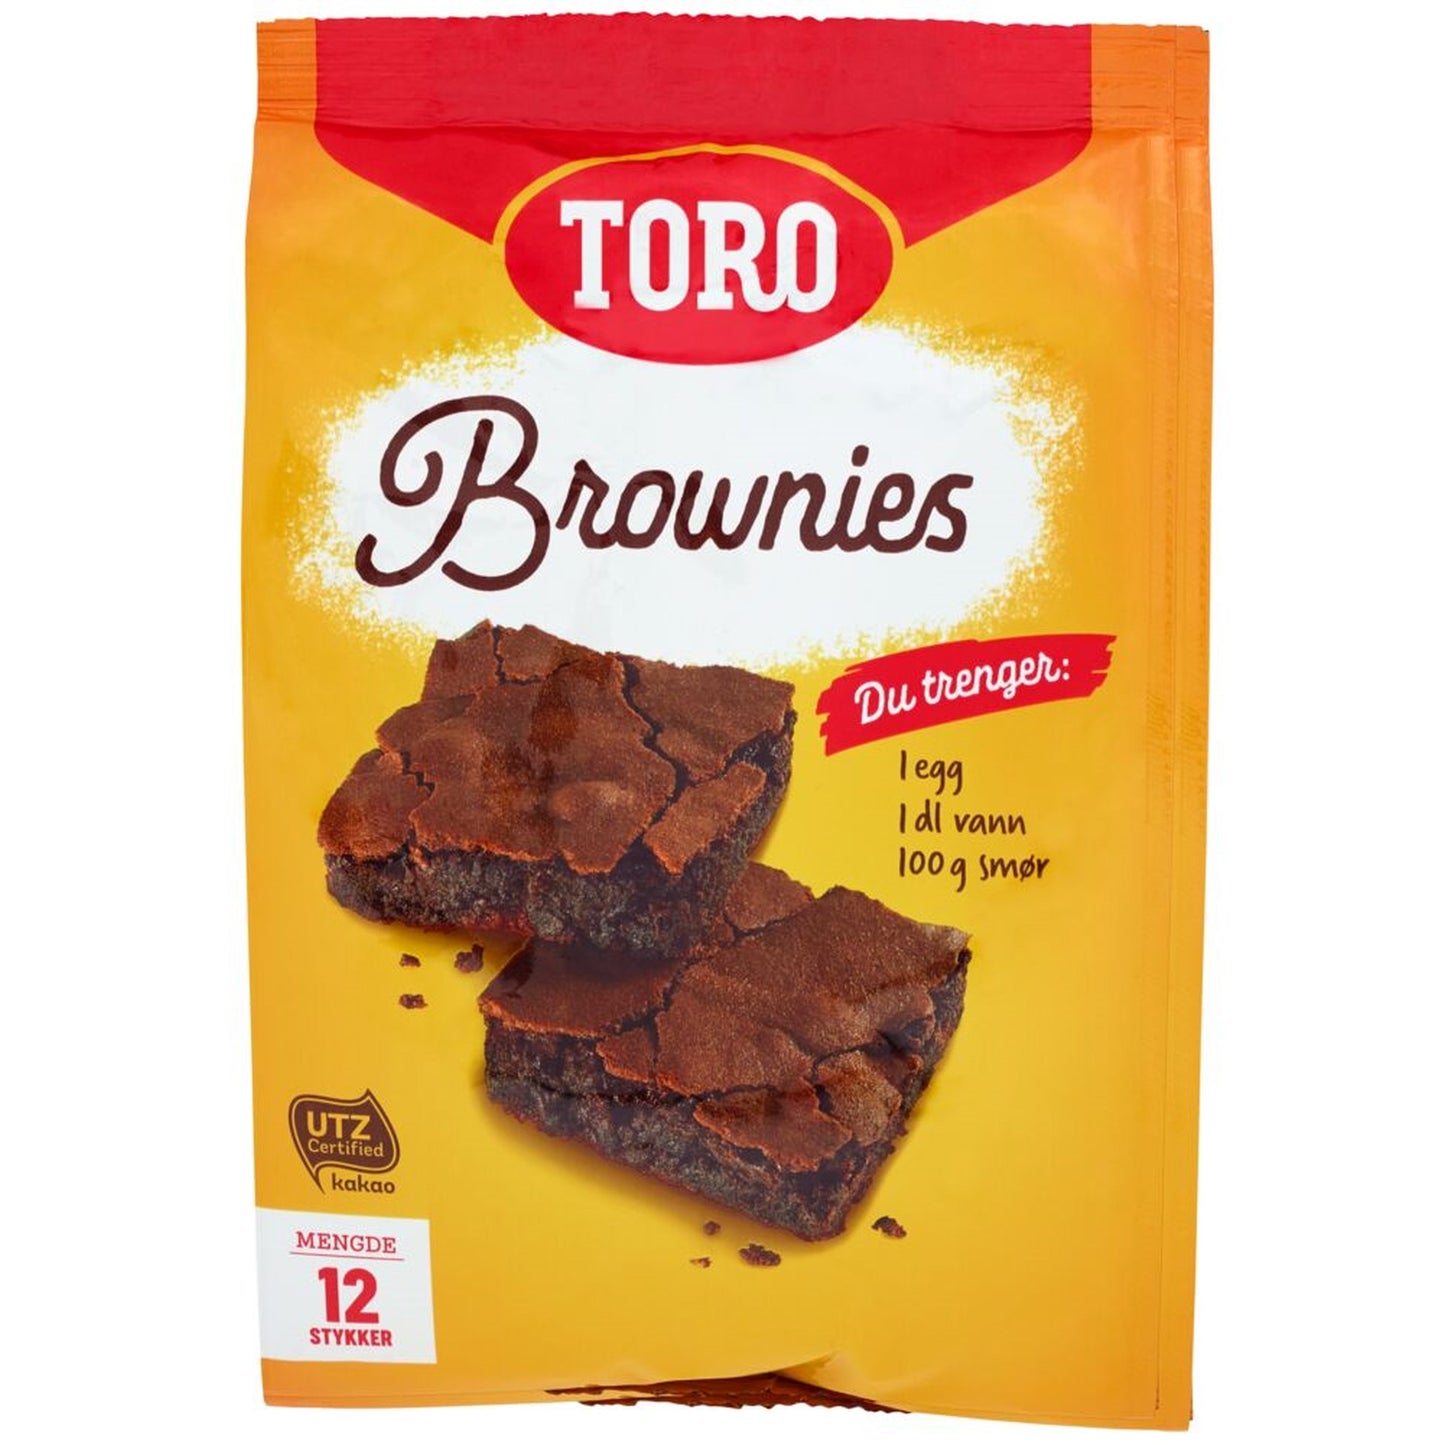 Toro Brownies - Norwegian Brownies 552 Grams (19.5 oz)